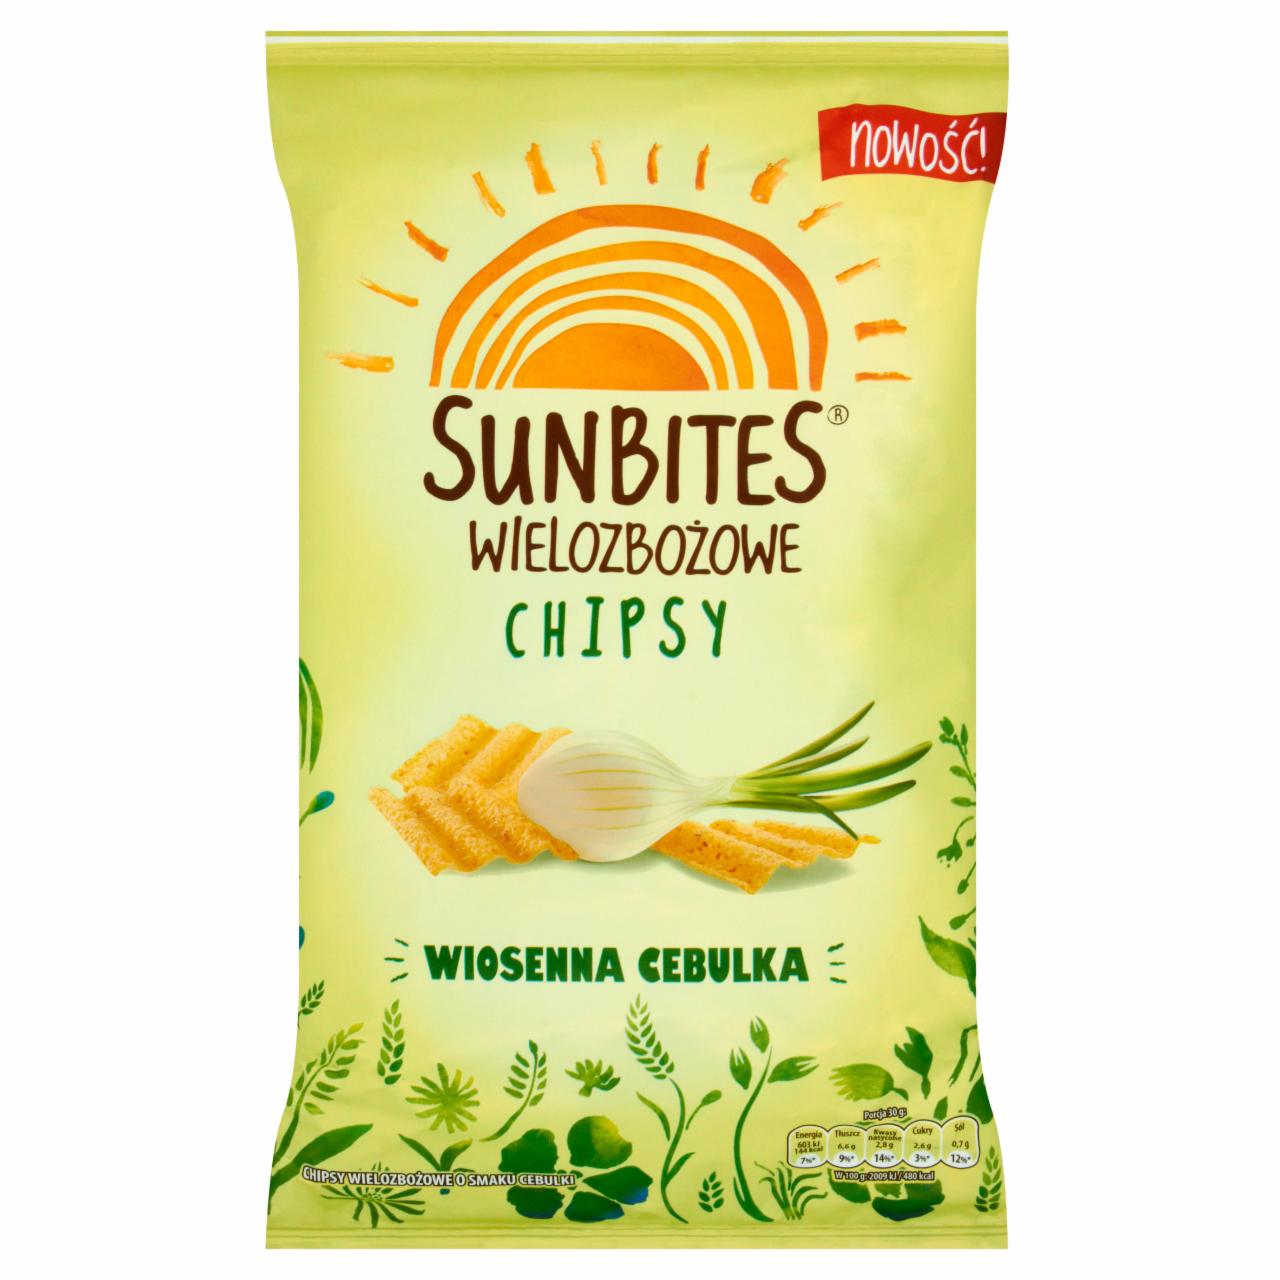 Zdjęcia - Sunbites Wielozbożowe chipsy wiosenna cebulka 110 g